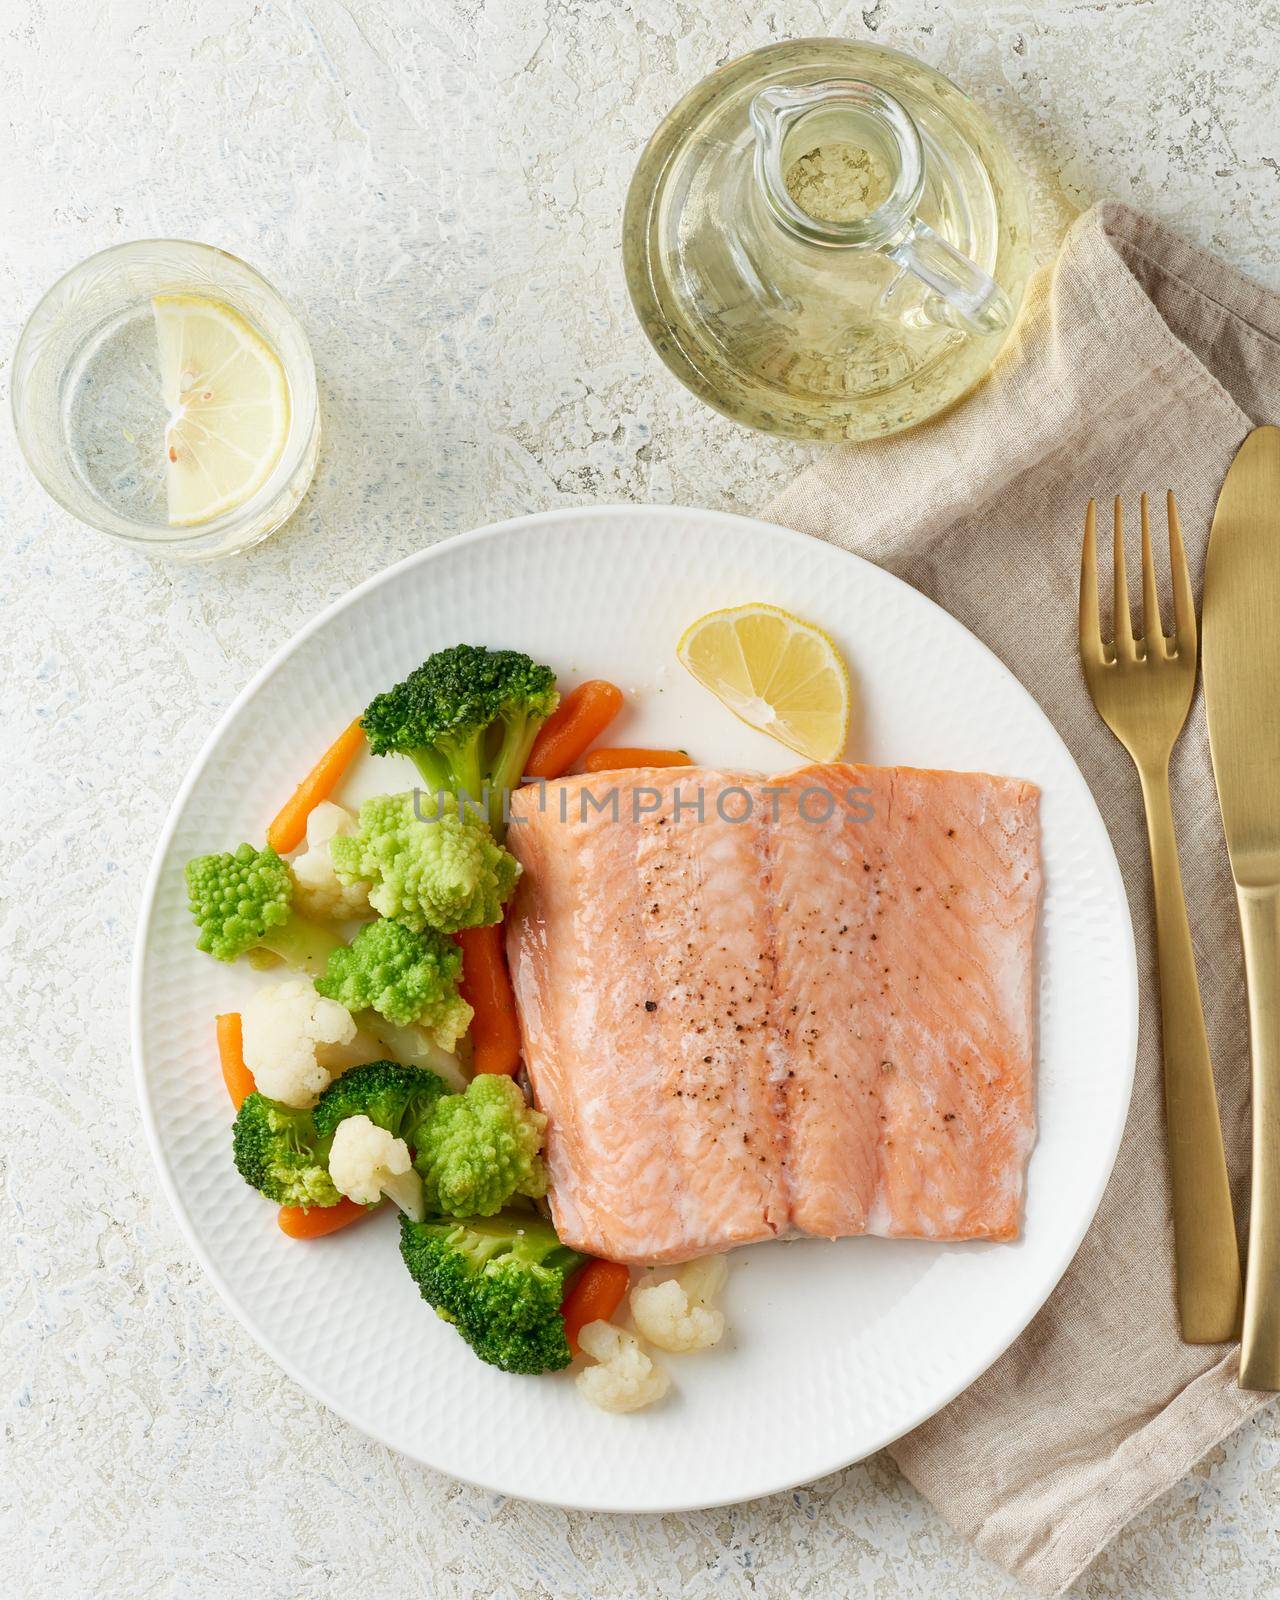 Steam salmon and vegetables, Paleo, keto, fodmap, dash diet. Mediterranean diet with steamed fish by NataBene